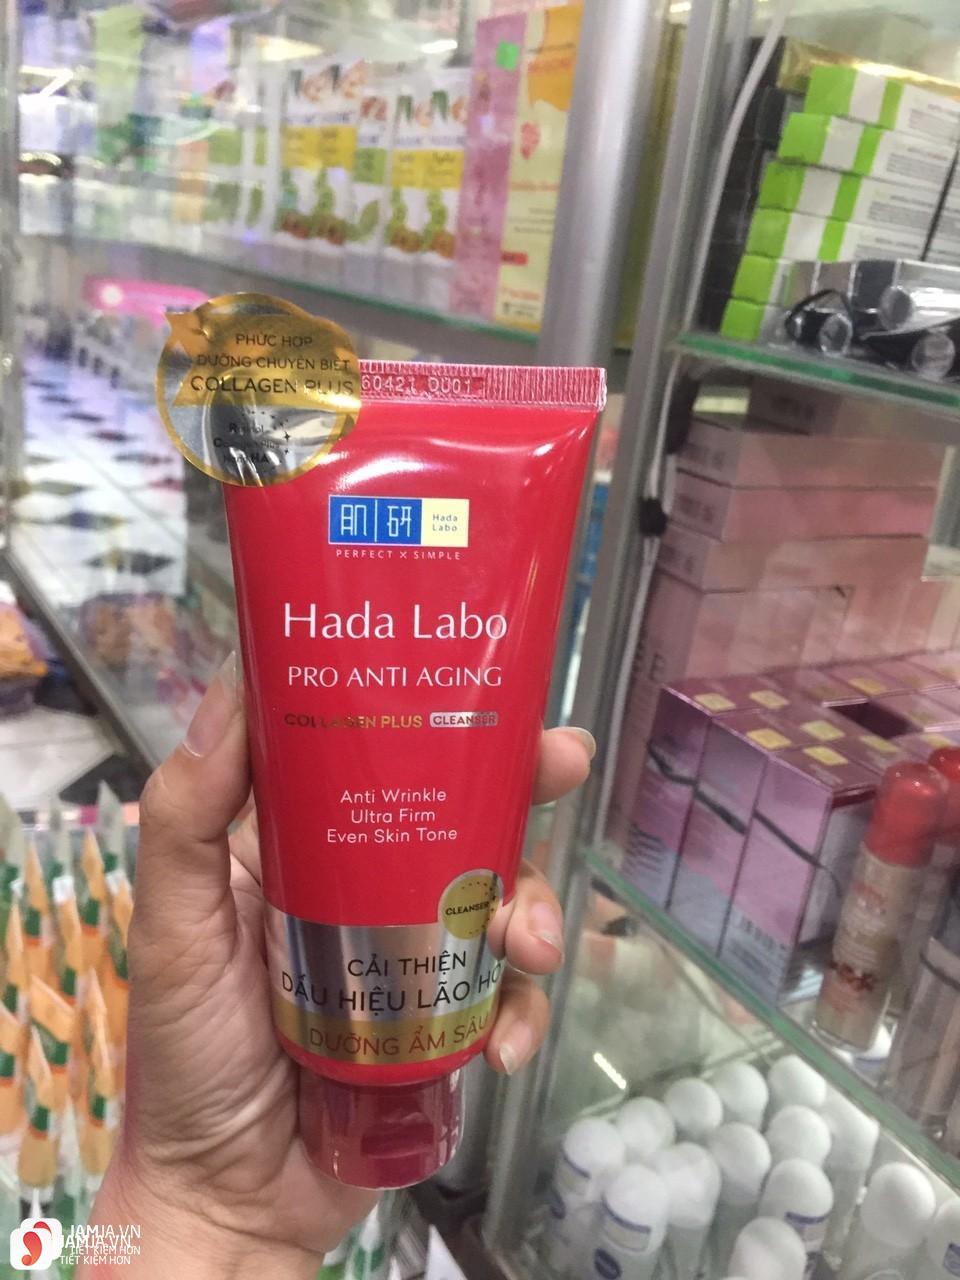 Sữa rửa mặt Hada Labo Pro Anti Aging Collagen Plus Cleanser